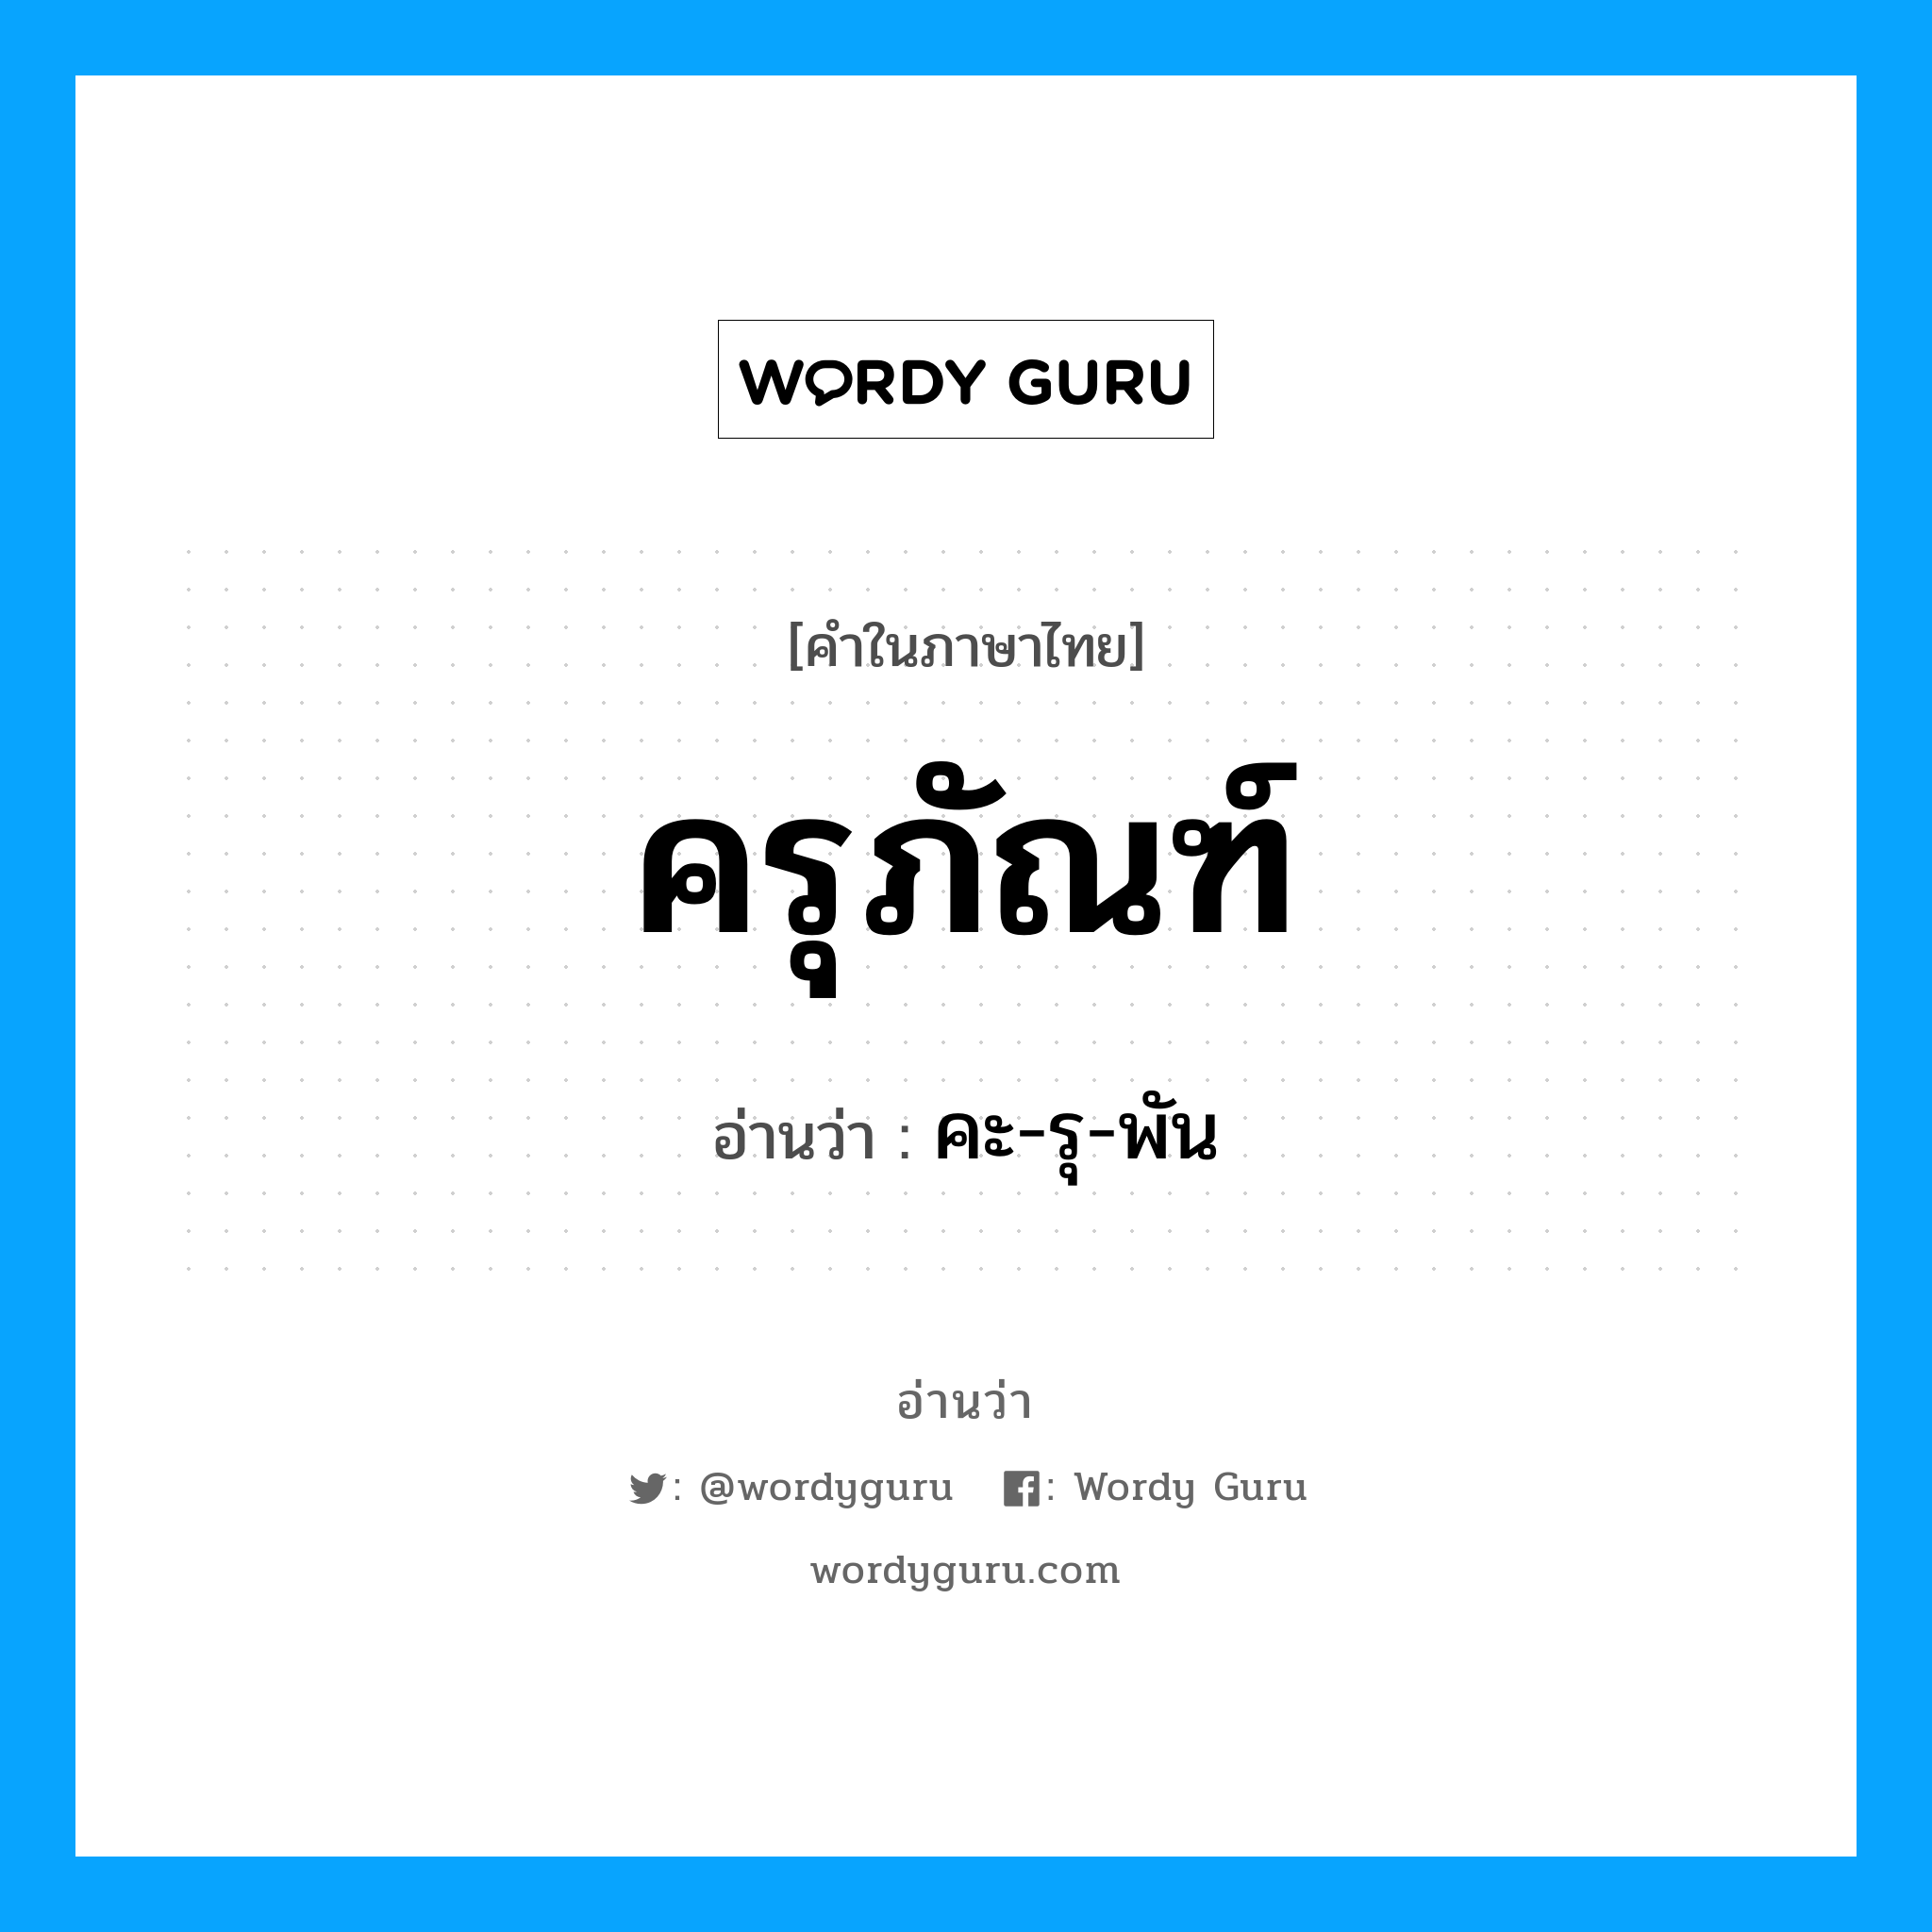 คะ รุ-พัน เป็นคำอ่านของคำไหน?, คำในภาษาไทย คะ-รุ-พัน อ่านว่า ครุภัณฑ์